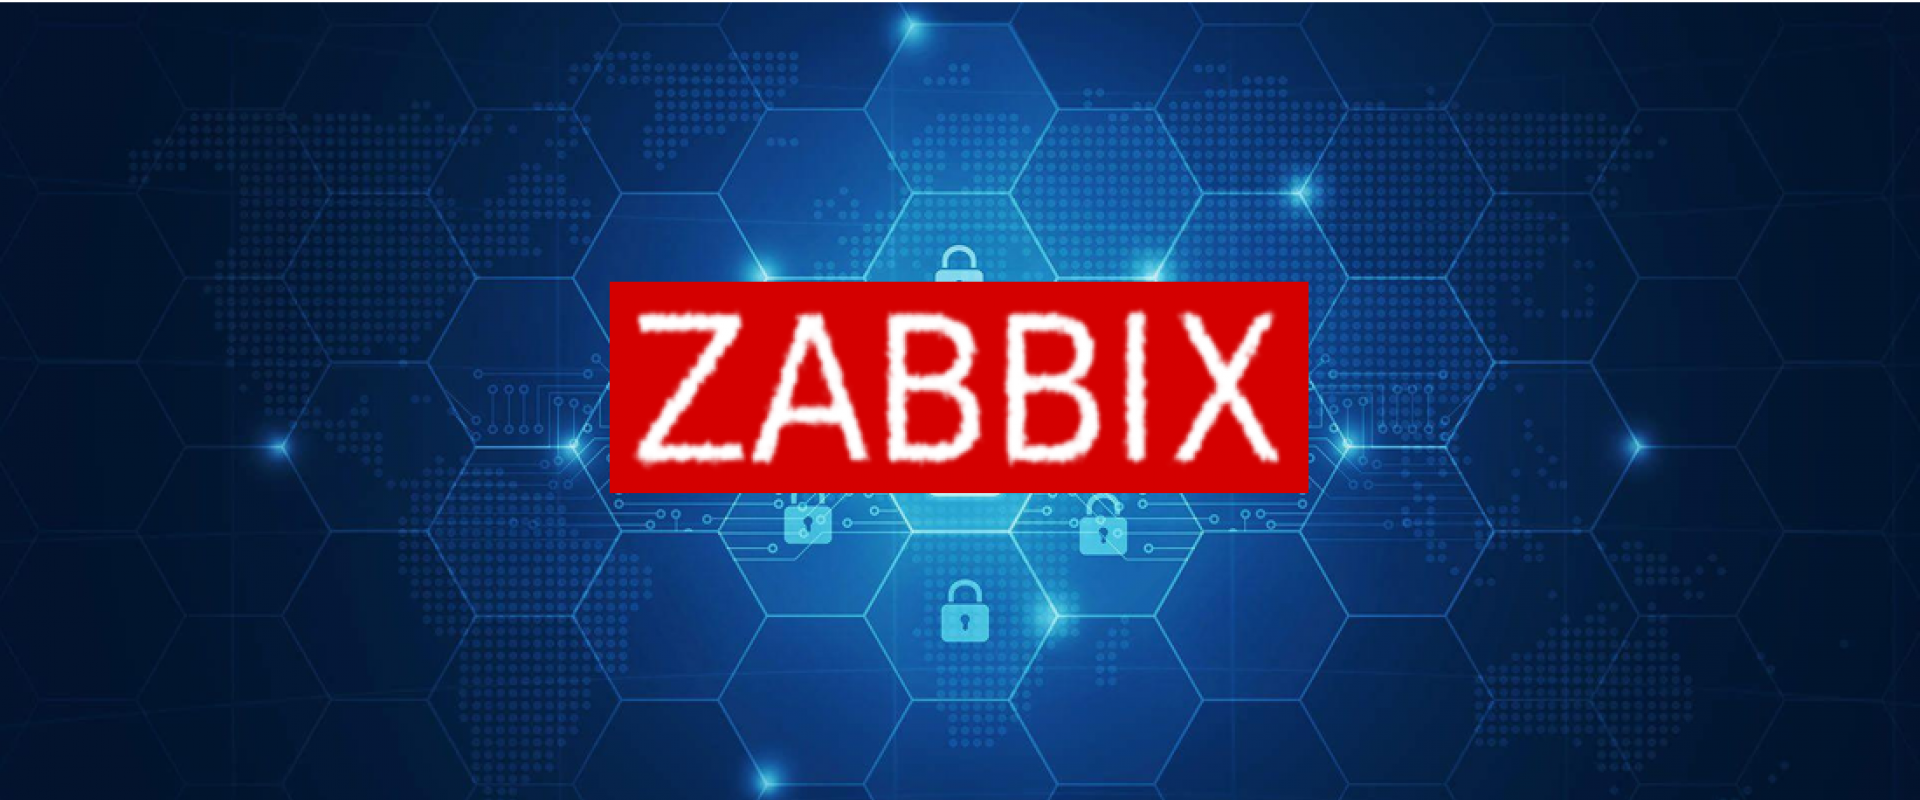 Zabbix triggers